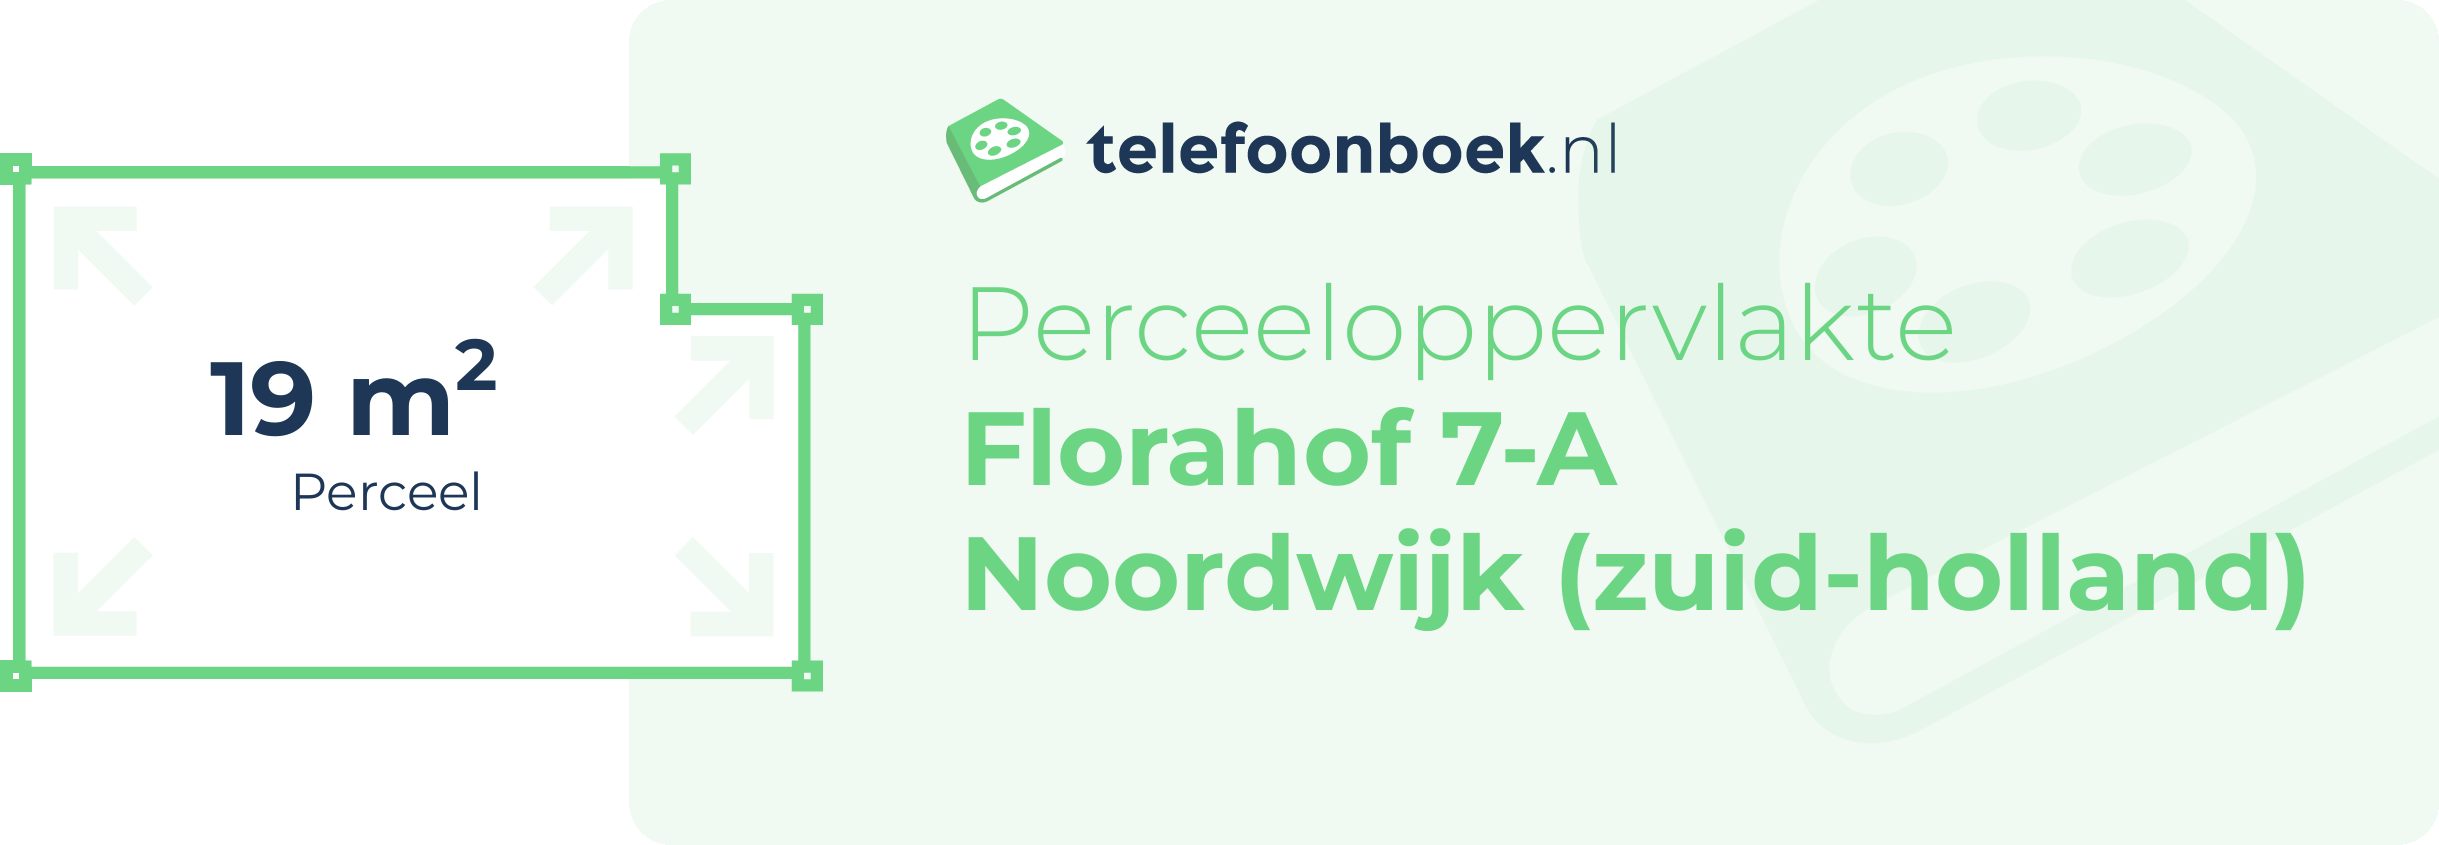 Perceeloppervlakte Florahof 7-A Noordwijk (Zuid-Holland)